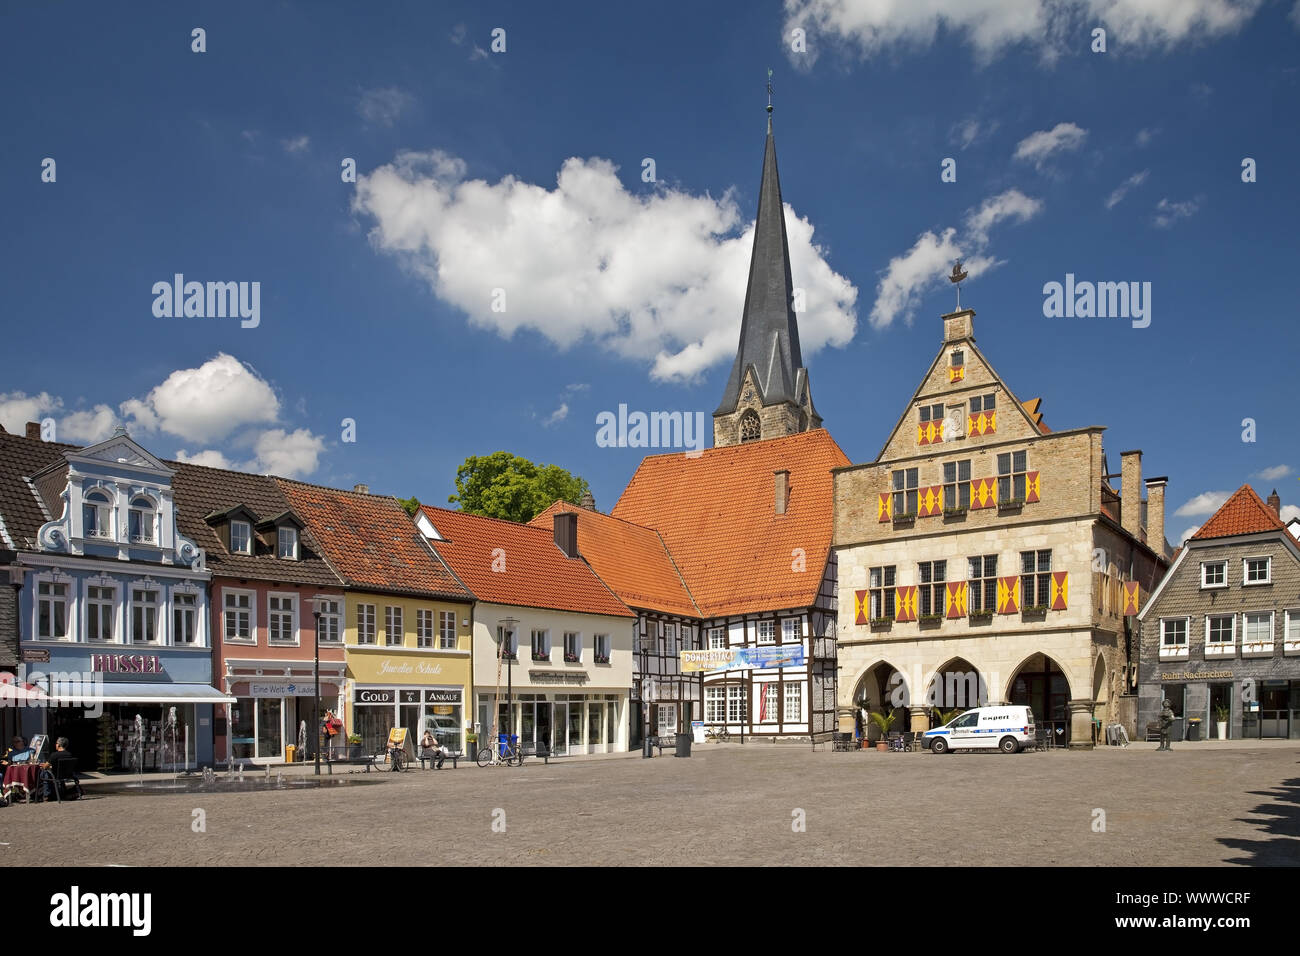 Altstadt mit Rathaus und St. Christophorus Kirche, Werne, Nordrhein-Westfalen, Deutschland, Europa Stockfoto